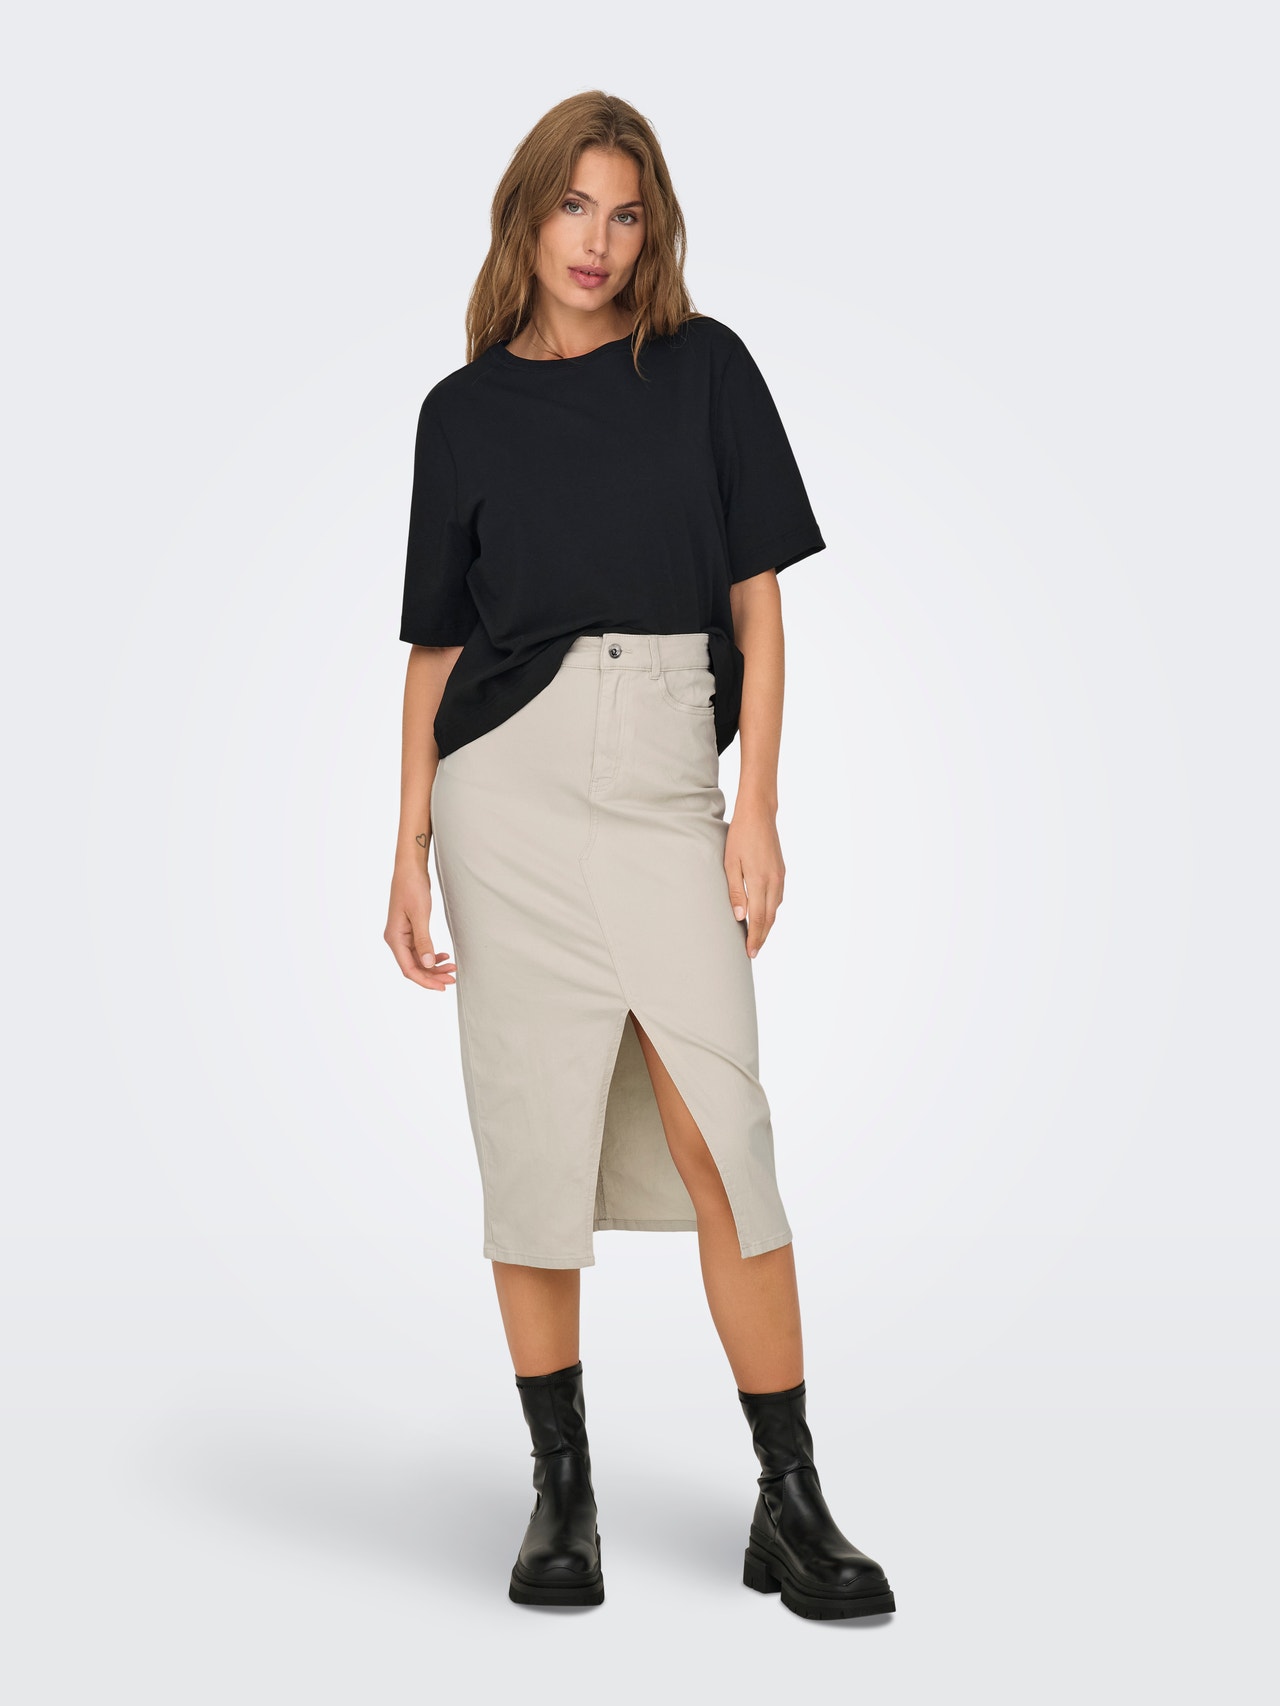 ONLY High waist Long skirt -Silver Lining - 15318146